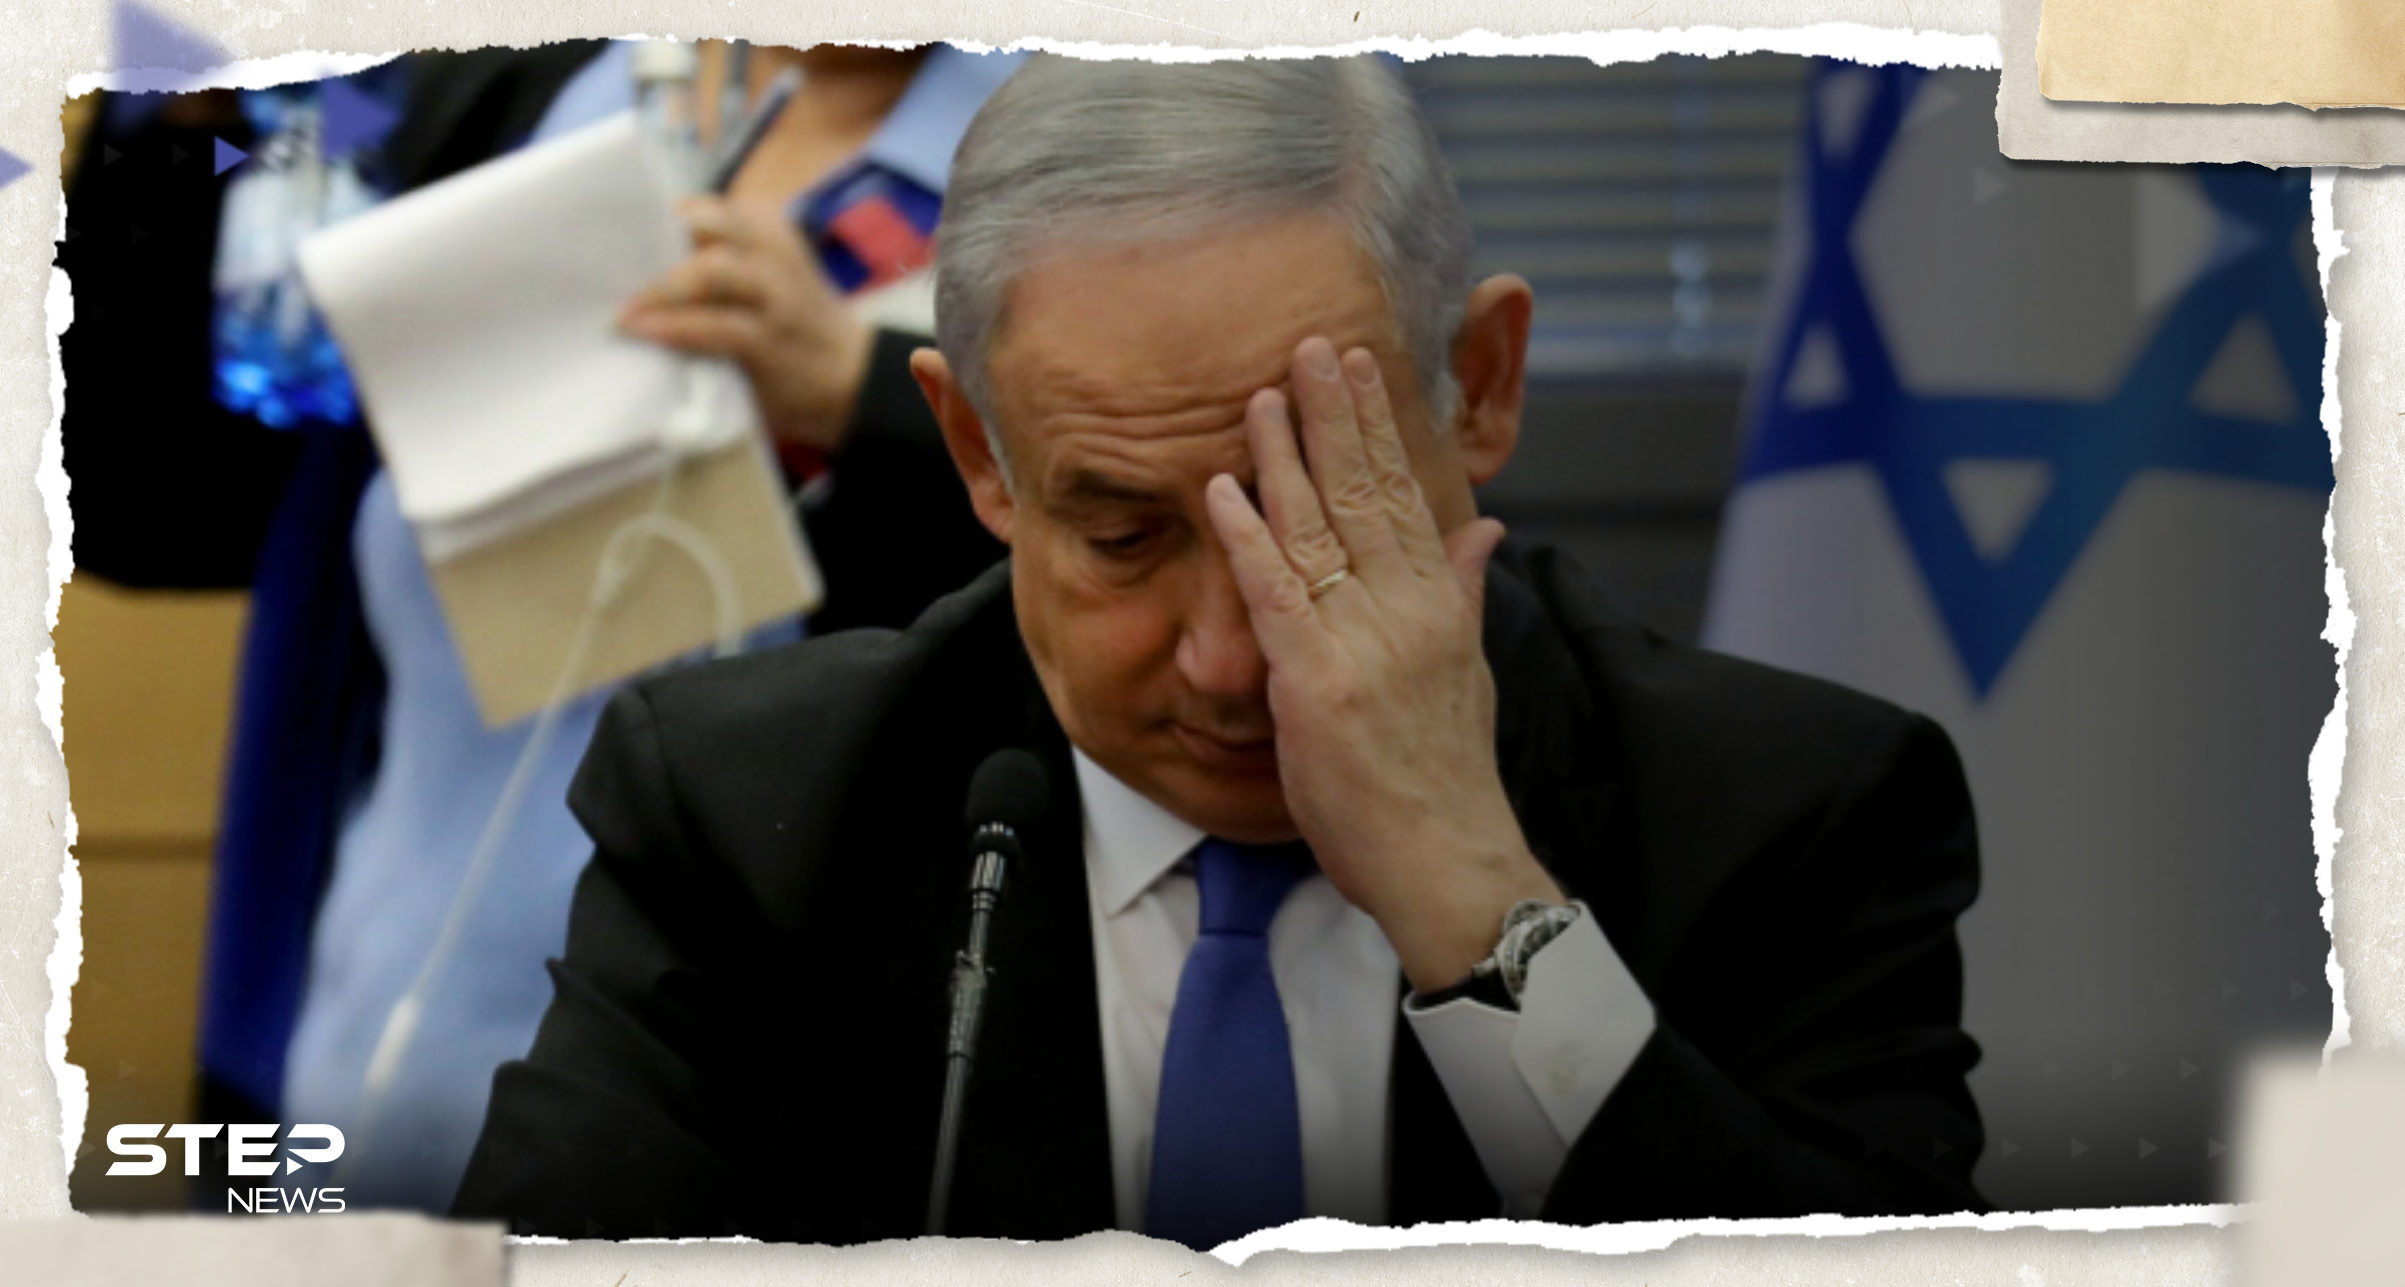 نتنياهو يعتزم إخضاع وزراء حكومته لجهاز كشف الكذب بعد تسريبات "خطيرة"